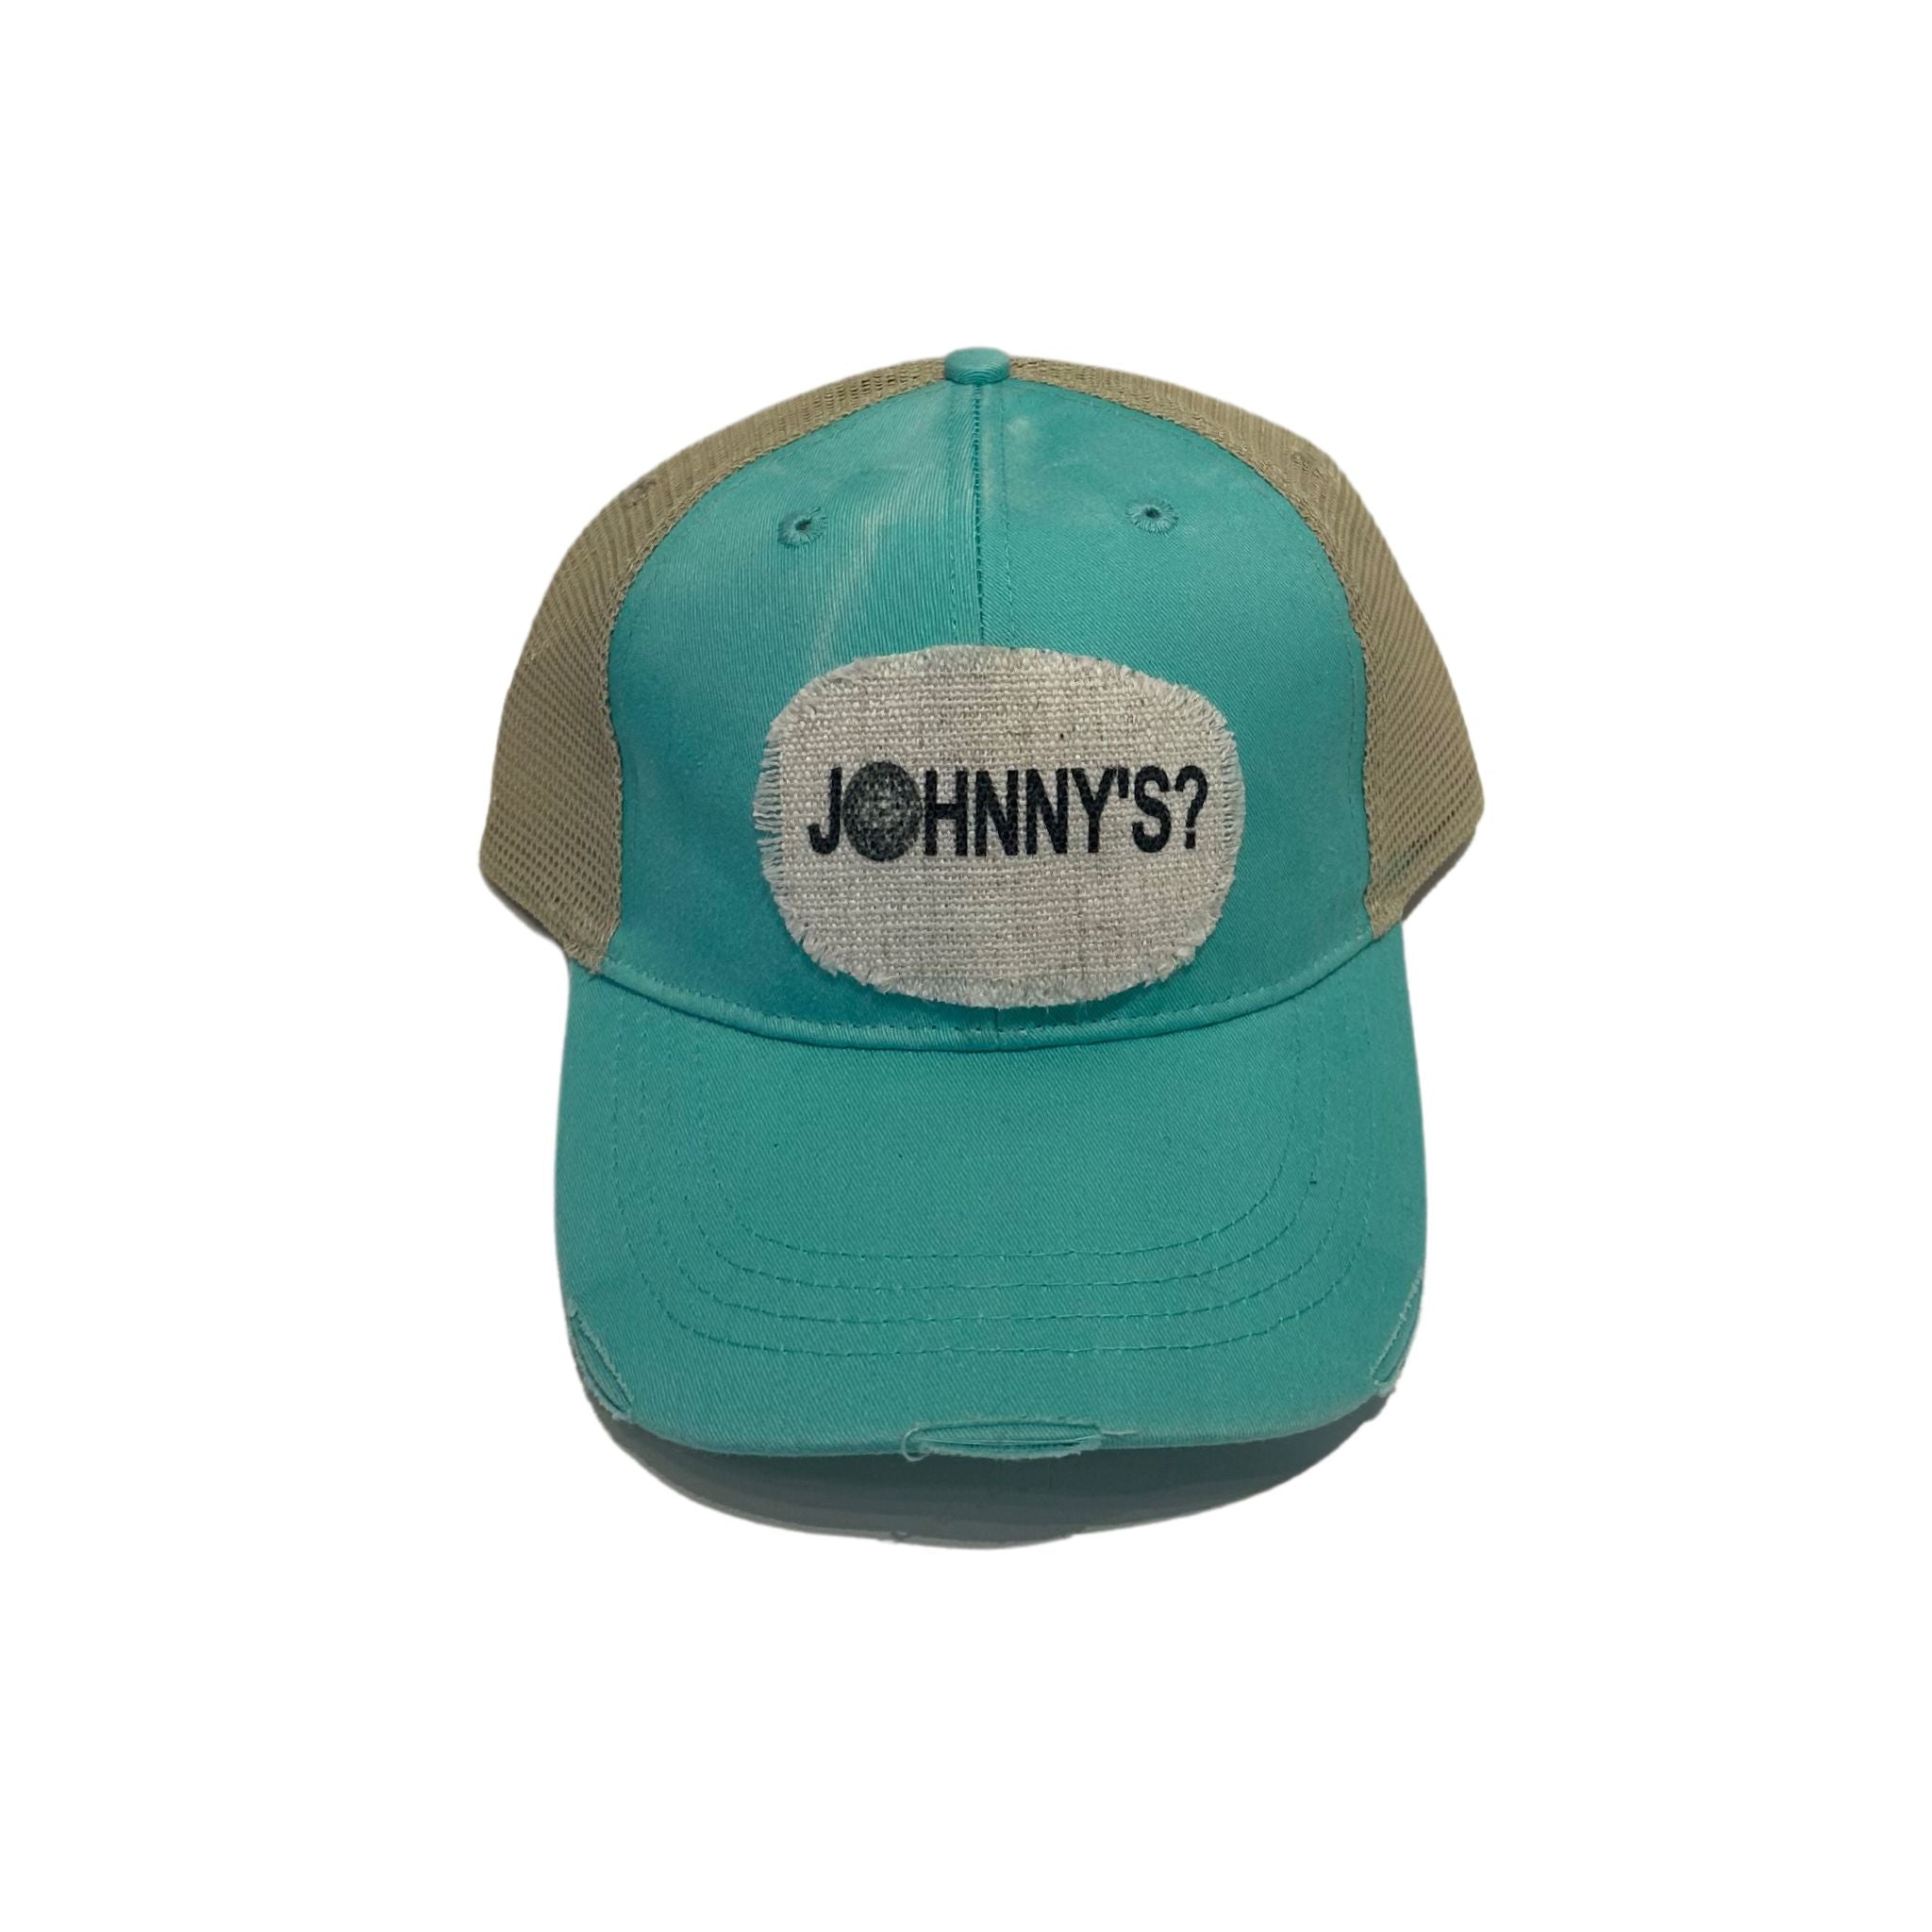 Johnny's